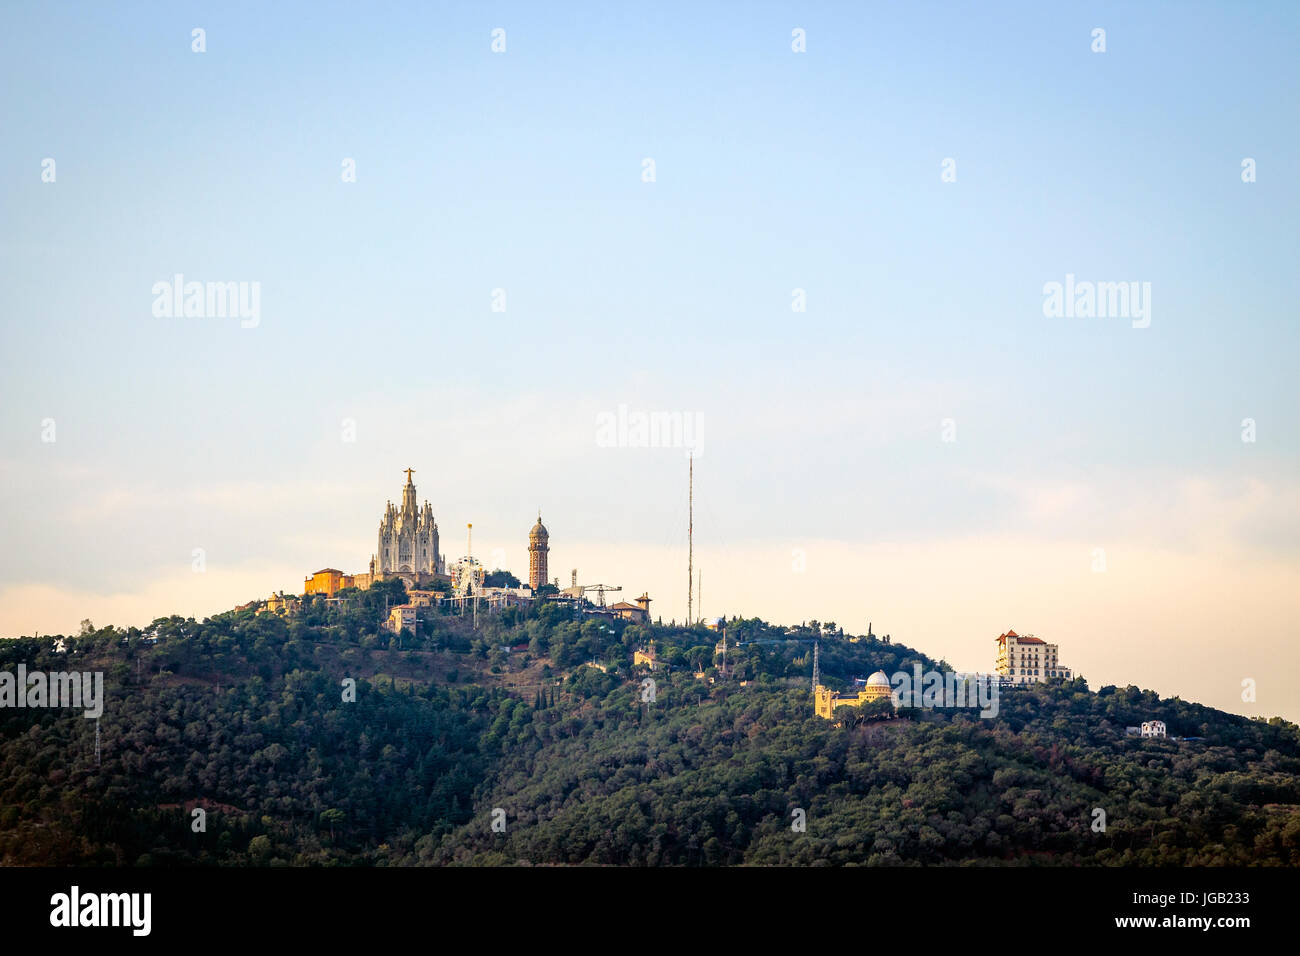 Tibidabo amusemnet Park and church of sacred heart, Barcelona, Catalonia Stock Photo